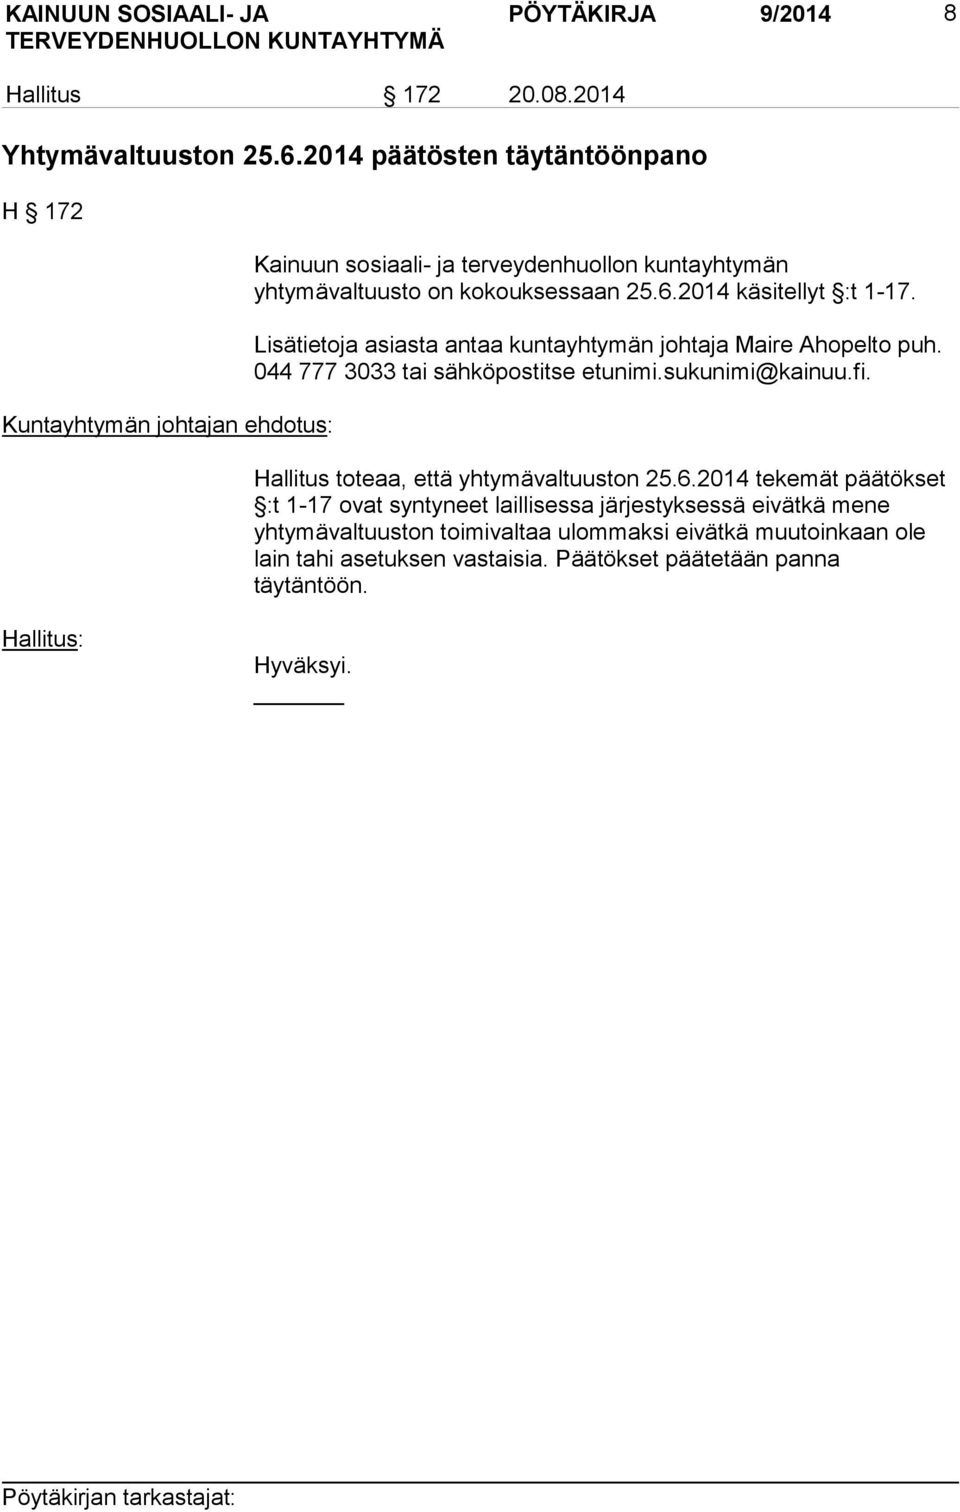 2014 käsitellyt :t 1-17. Lisätietoja asiasta antaa kuntayhtymän johtaja Maire Ahopelto puh. 044 777 3033 tai sähköpostitse etunimi.sukunimi@kainuu.fi.